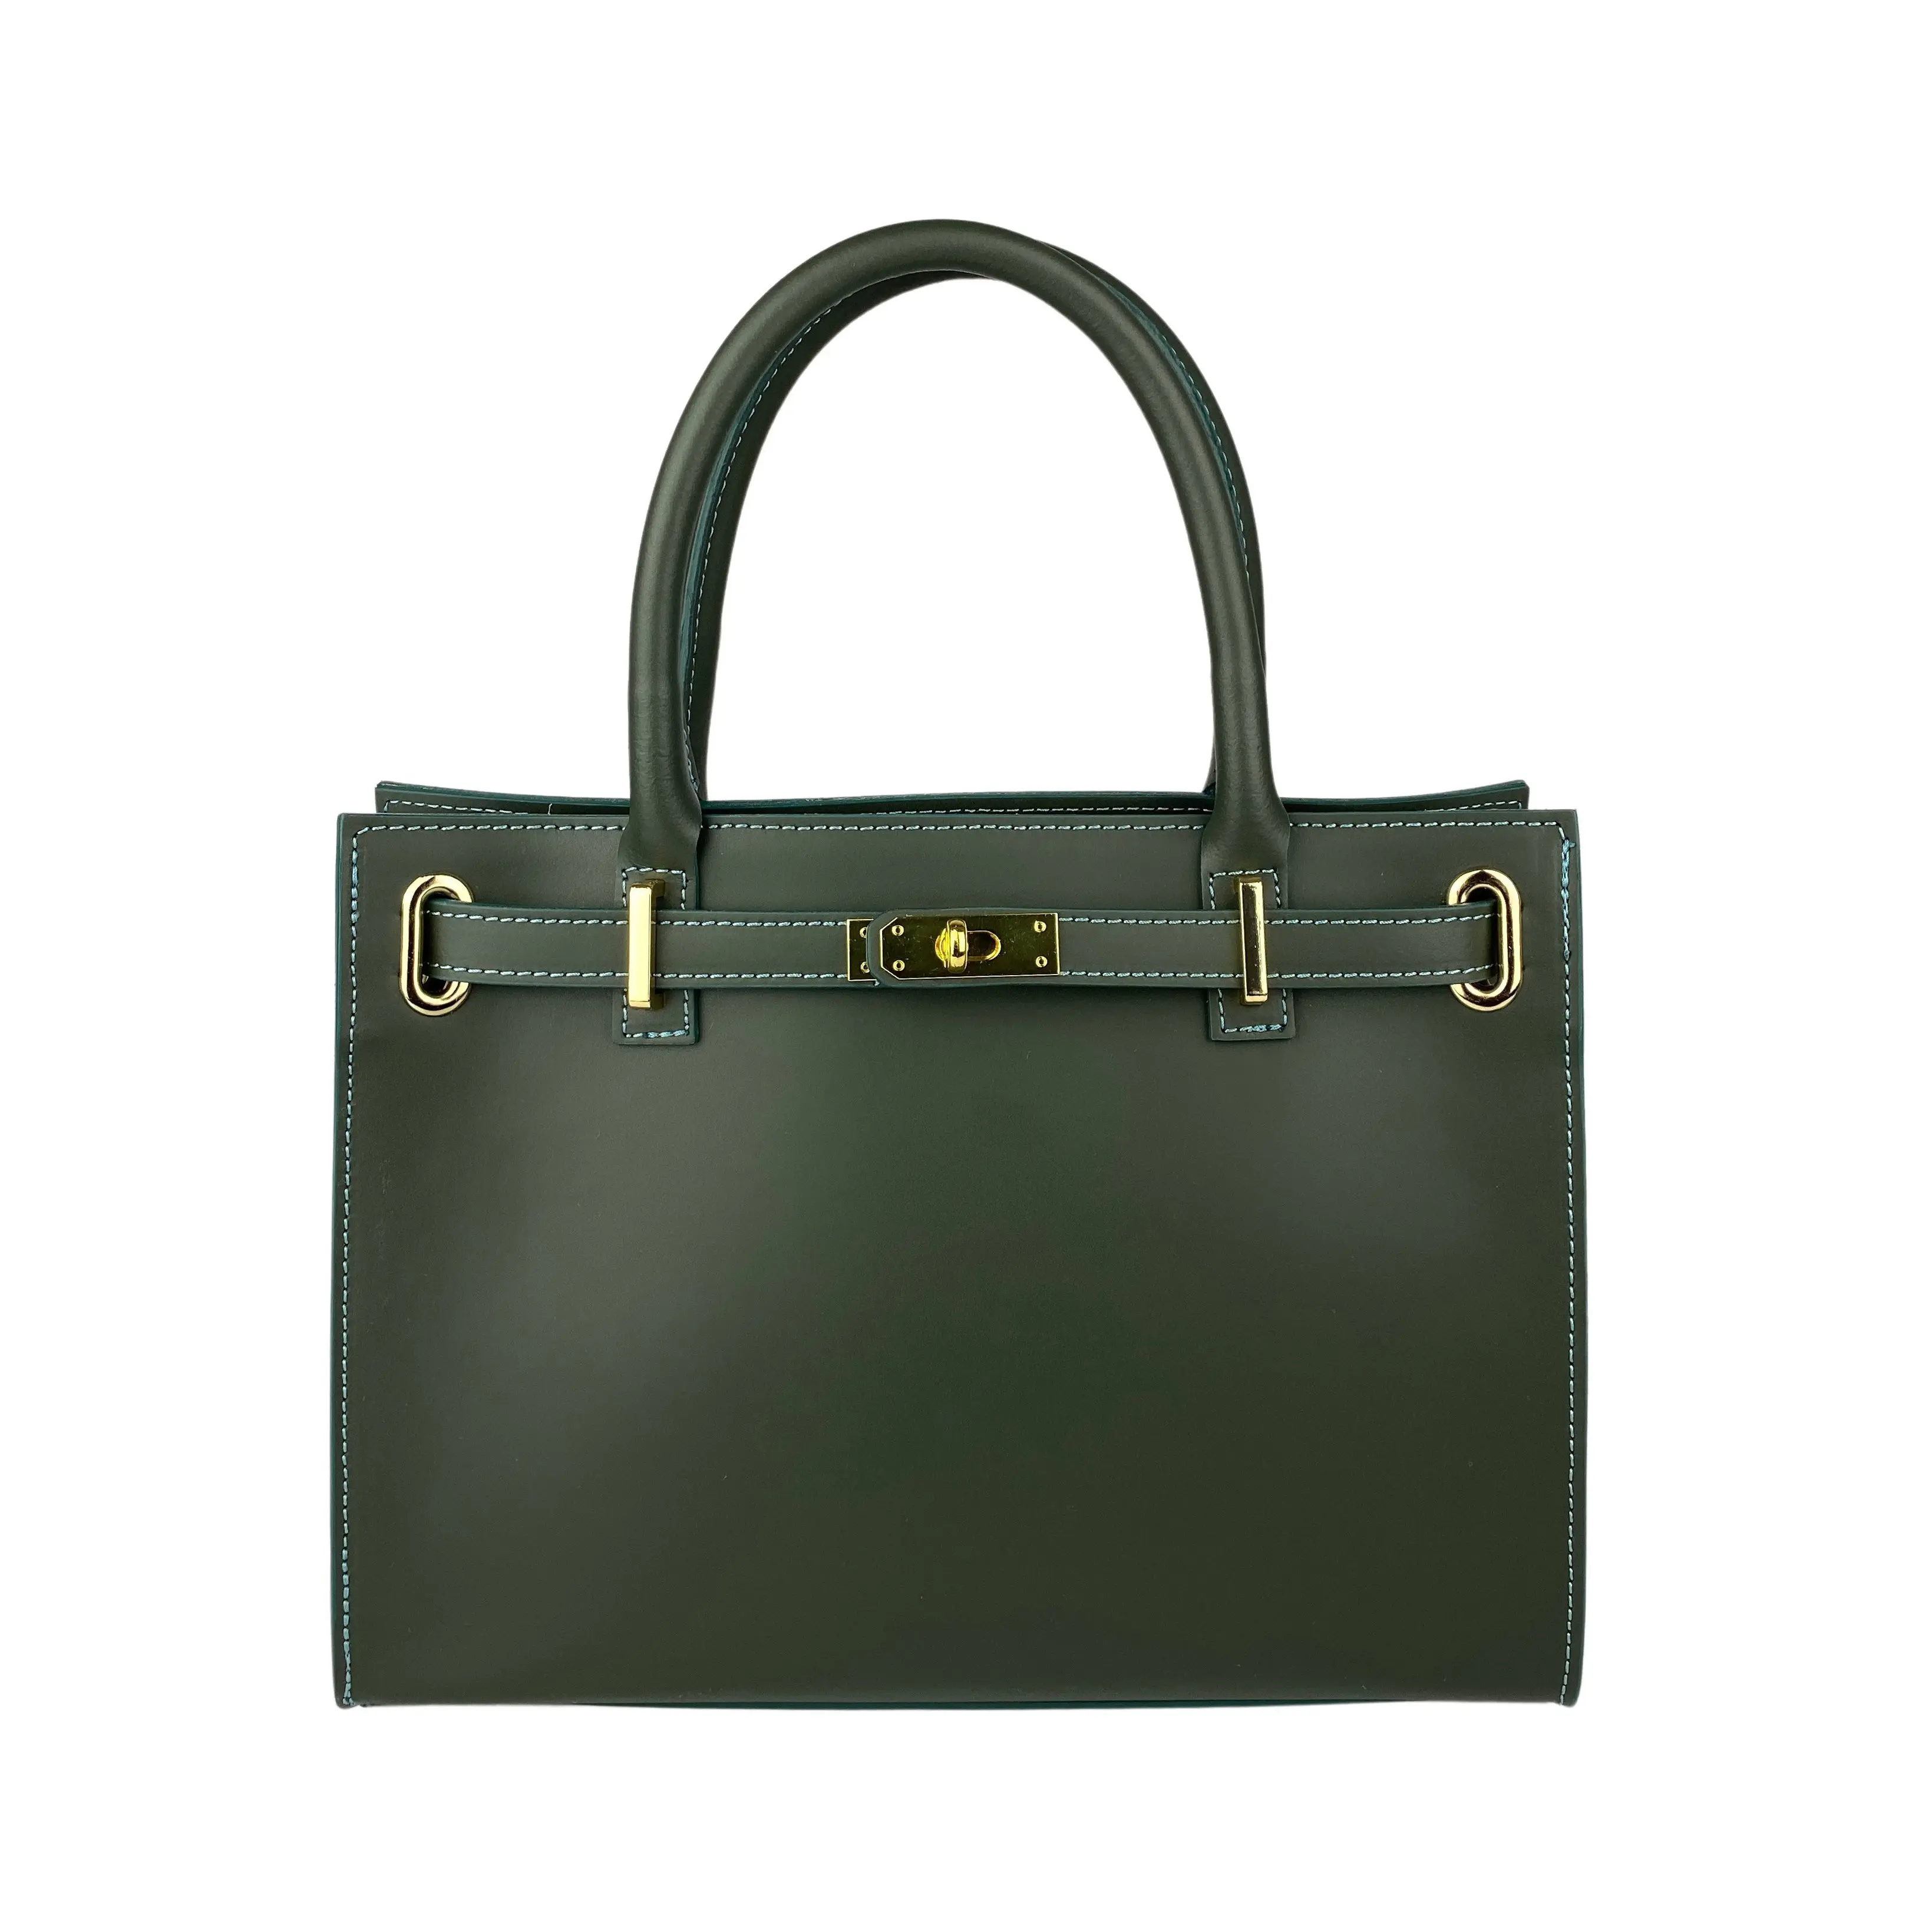 İtalyan deri cüzdanlar ve çanta kadınlar için yapılan lüks İtalya Tote tasarımcı çantası bayan Adele